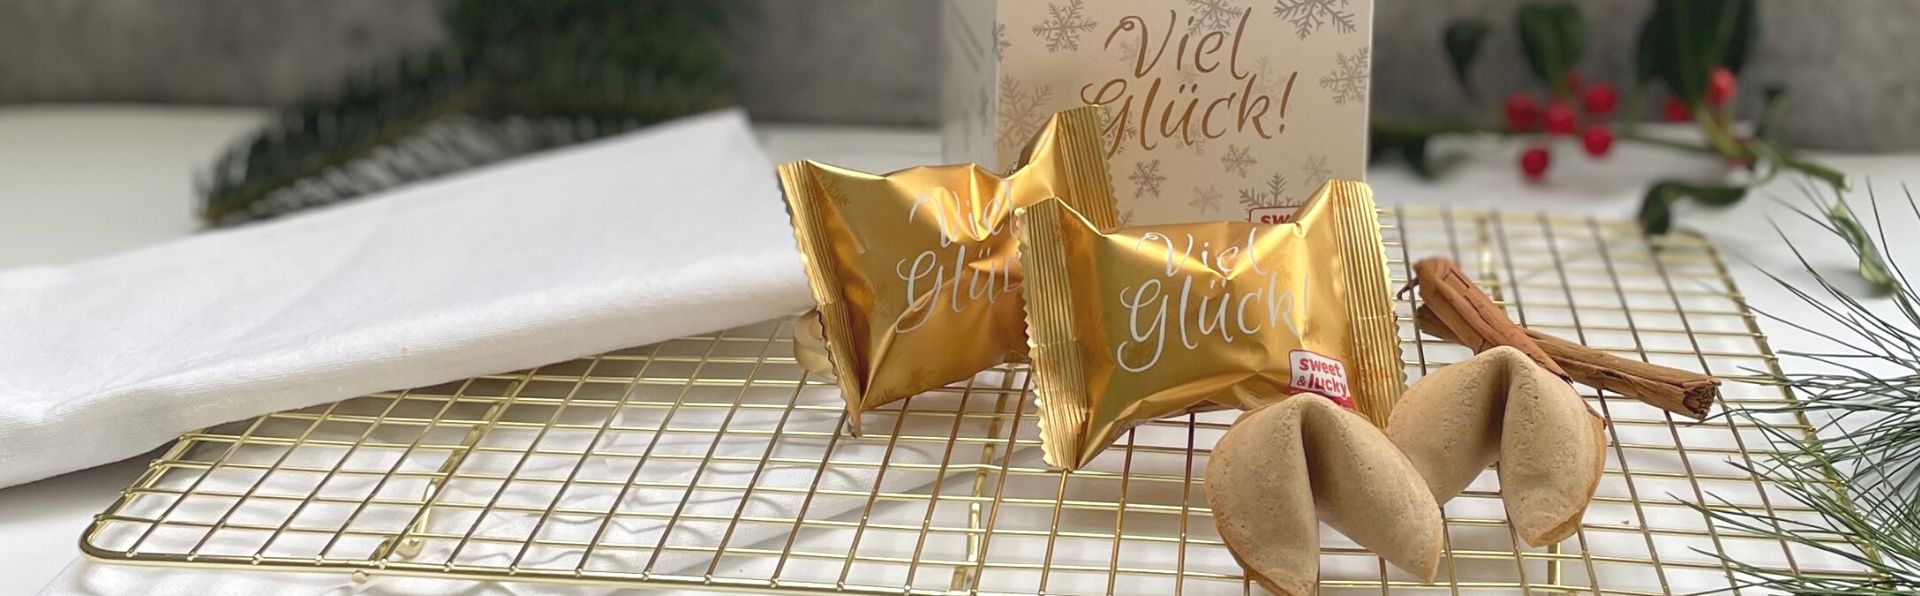 Glückskekse Faltschachtel und in Goldfolie mit Viel Glück-Aufschrift und zwei ausgepackte Kekse auf einem goldenen Rost mit Zimtstange und Tannengrün im Hintergrund